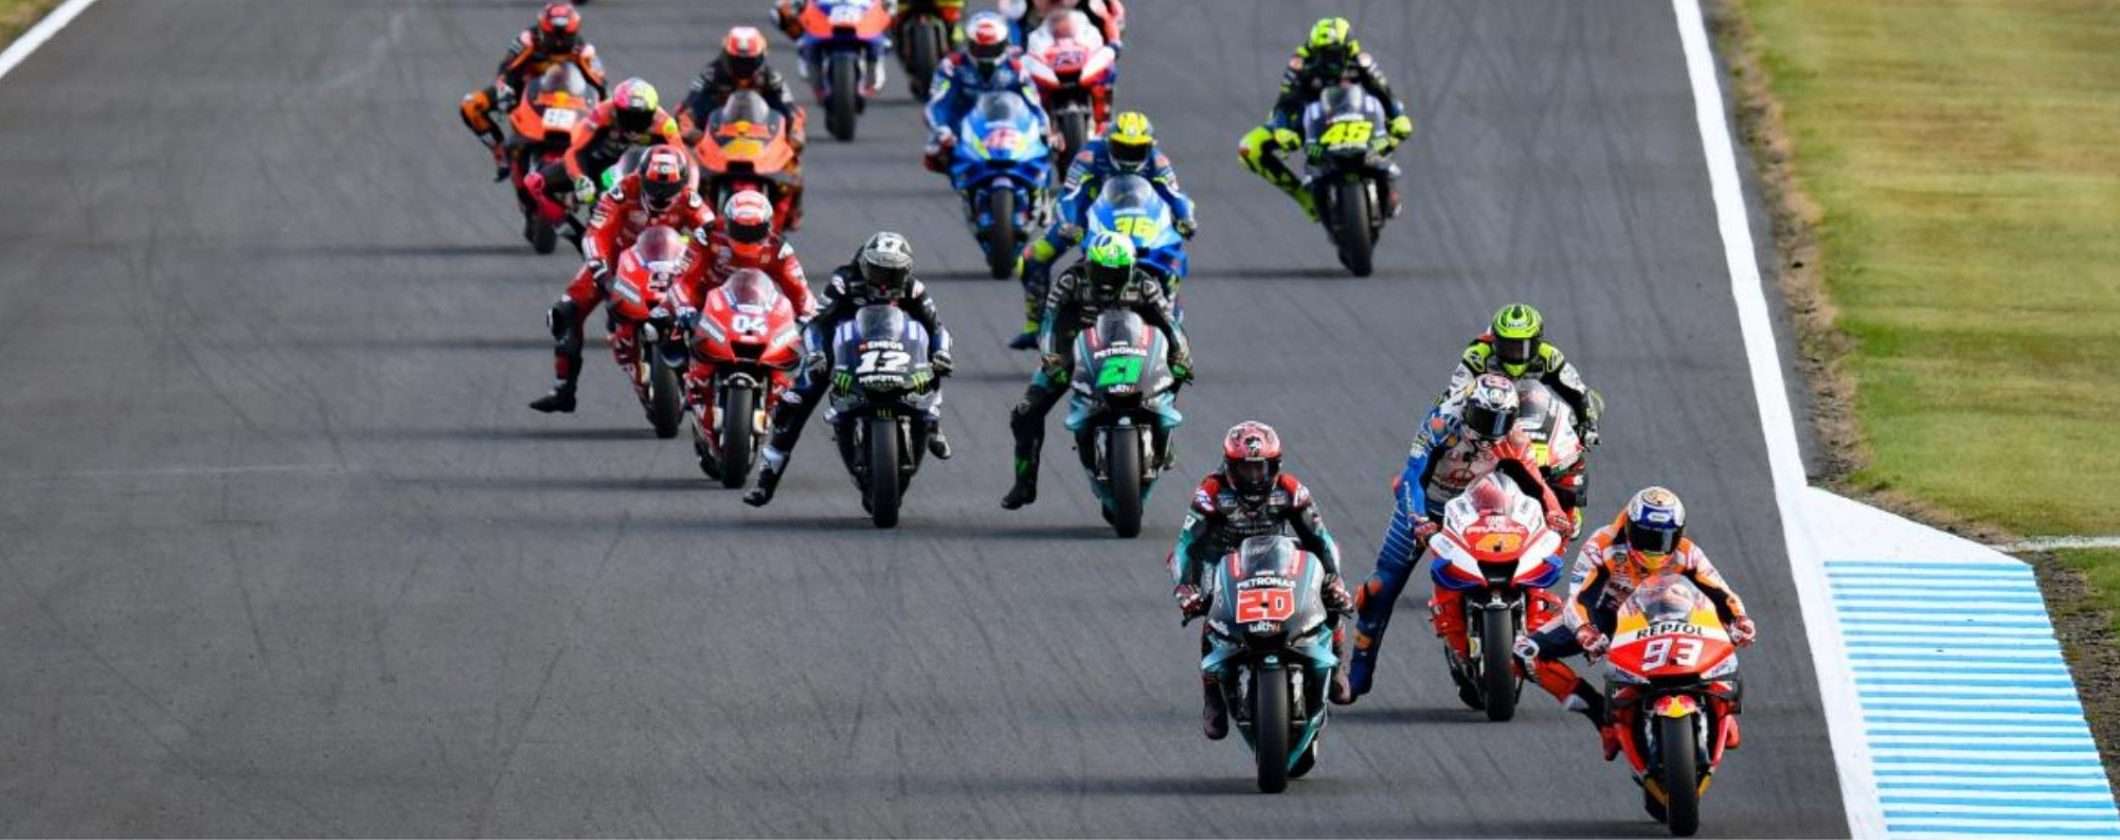 MotoGP d'Olanda: come vedere il GP ad Assen in streaming